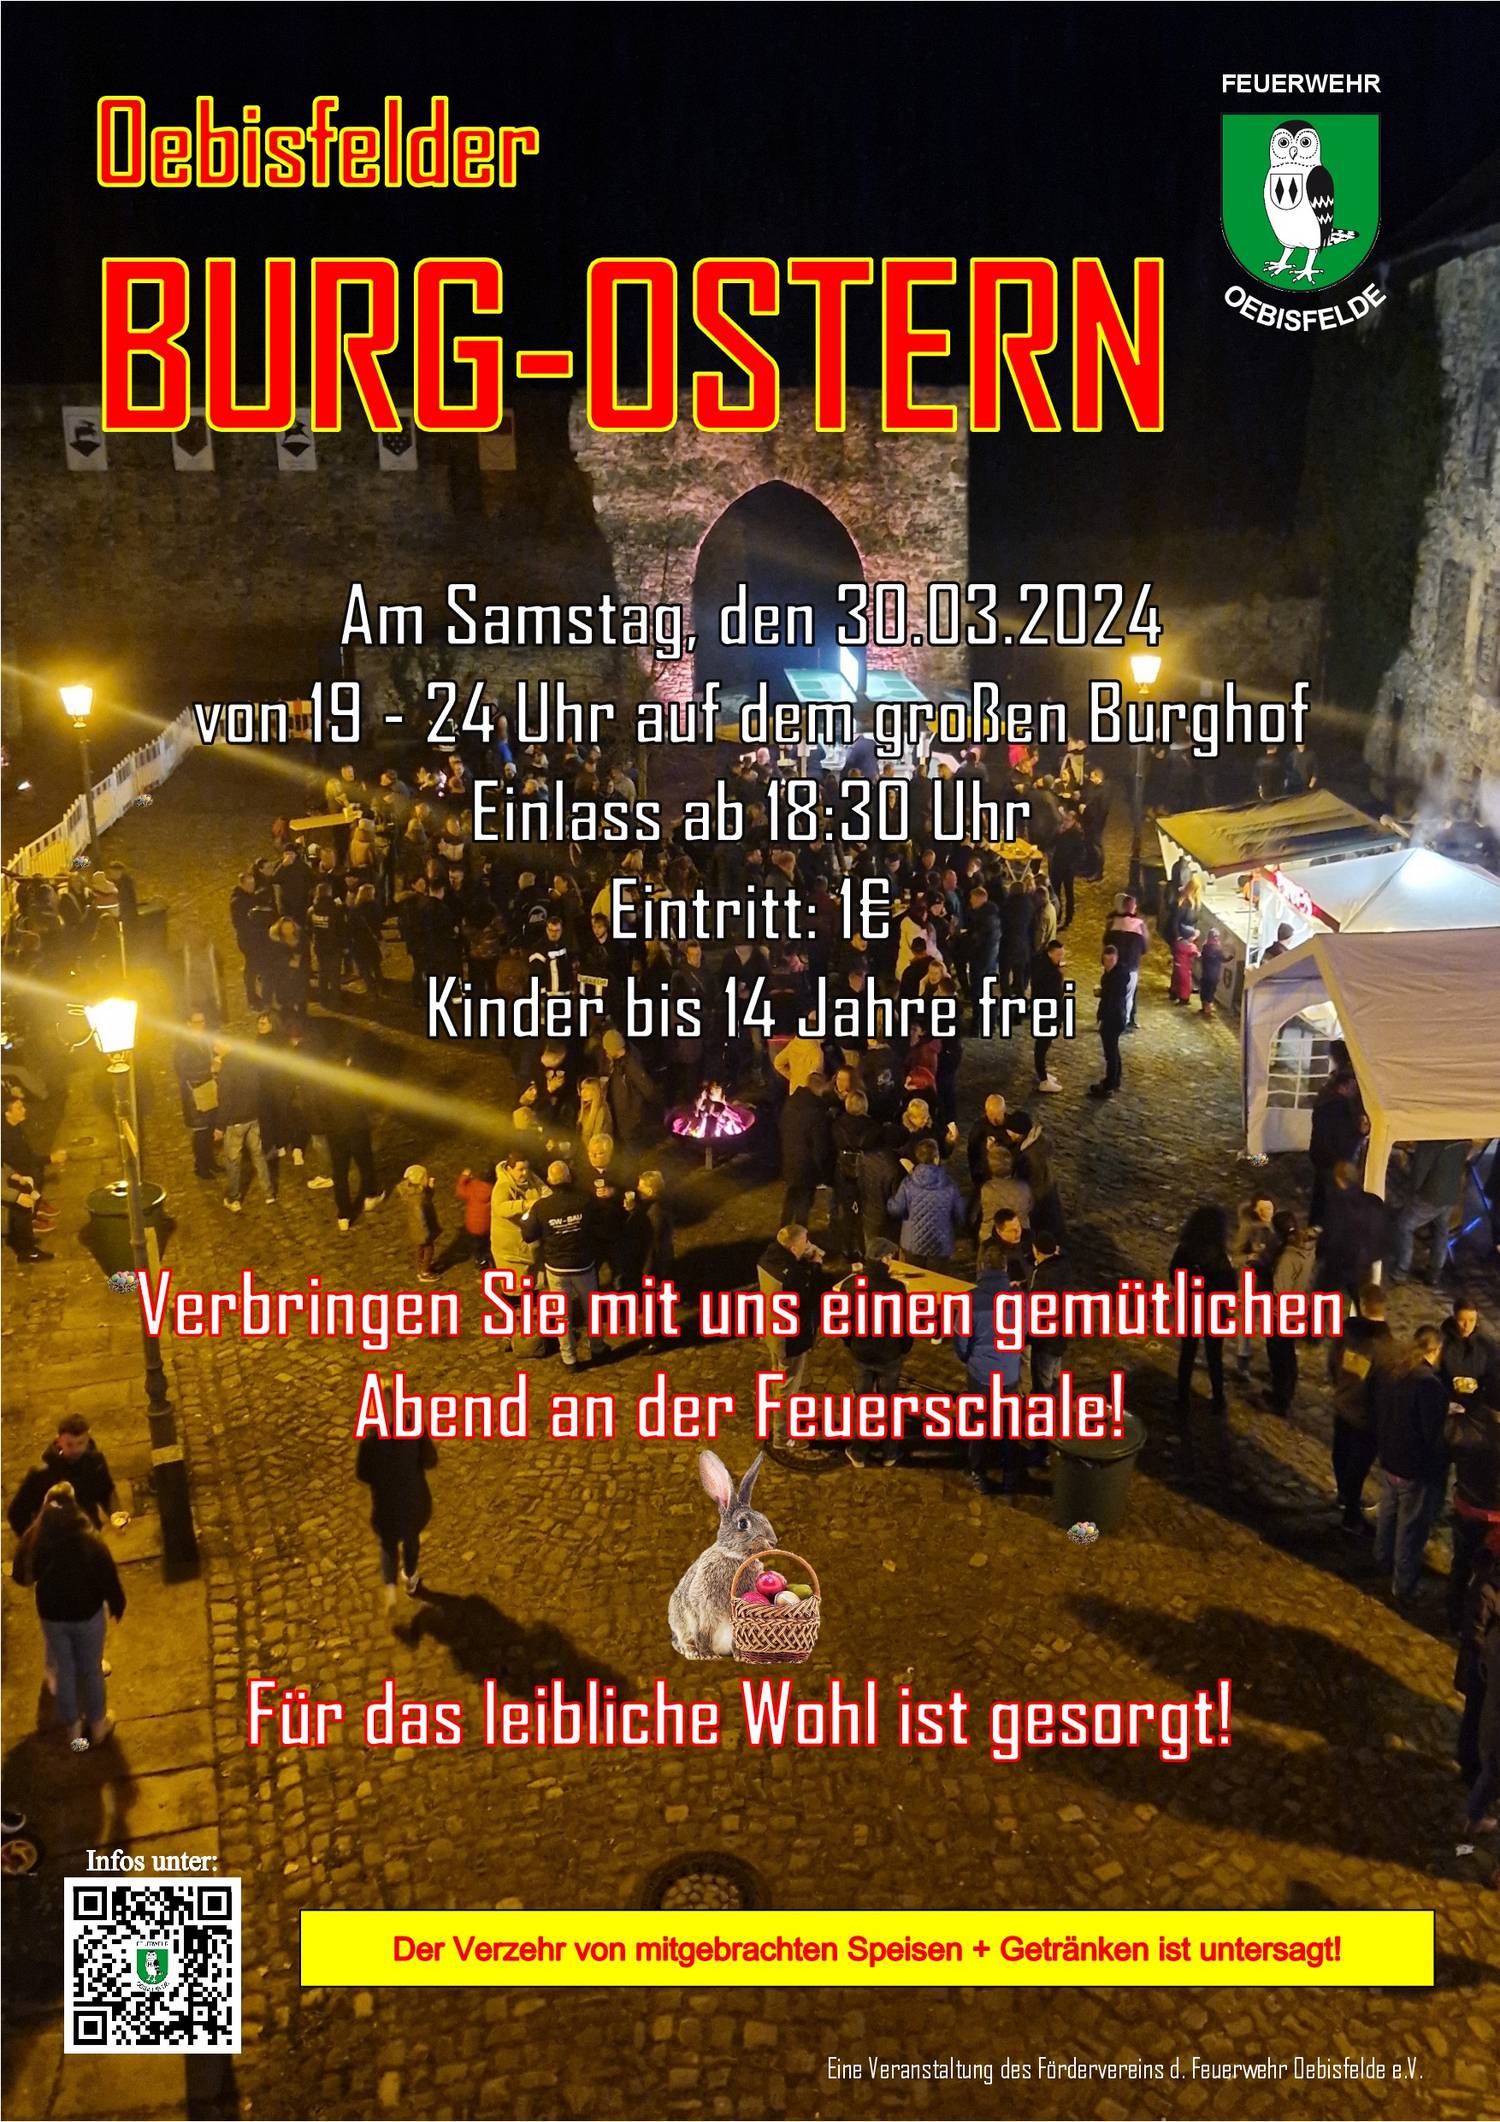 2023 01 05 Plakat Burgostern 2024 © Förderverein d. Feuerwehr Oebisfelde e.V.